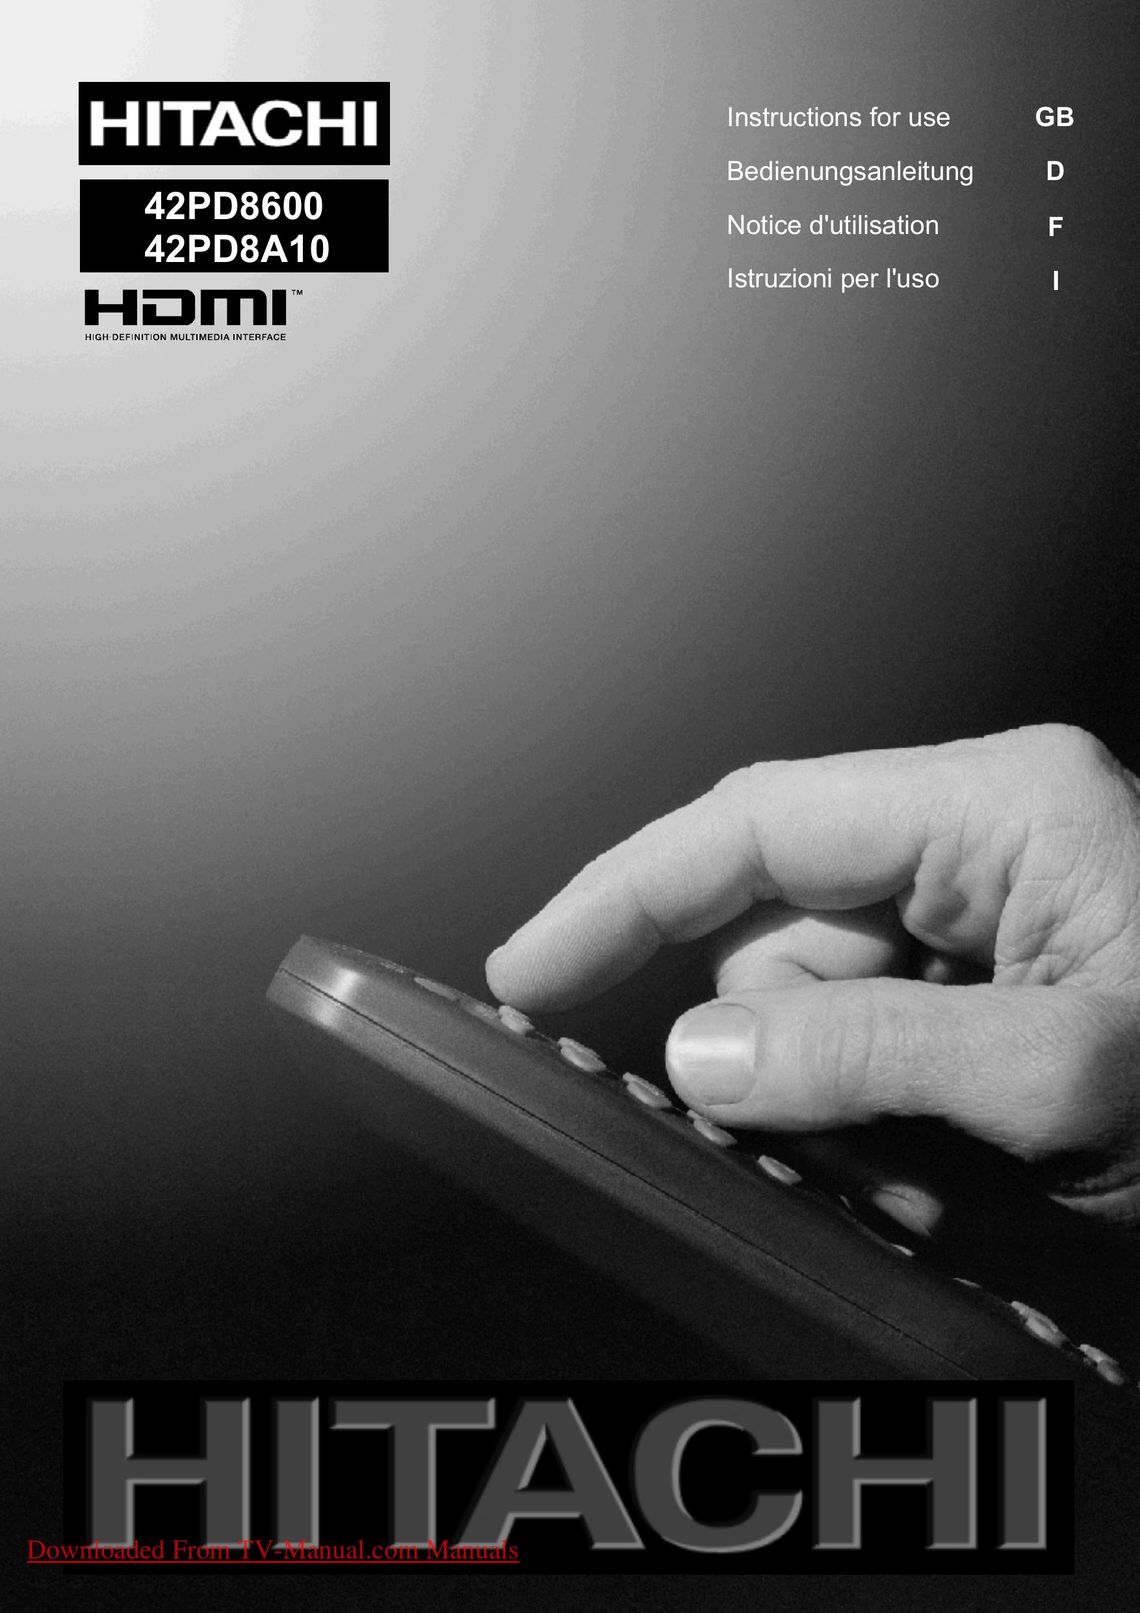 Hitachi 42PD8600 TV Antenna User Manual